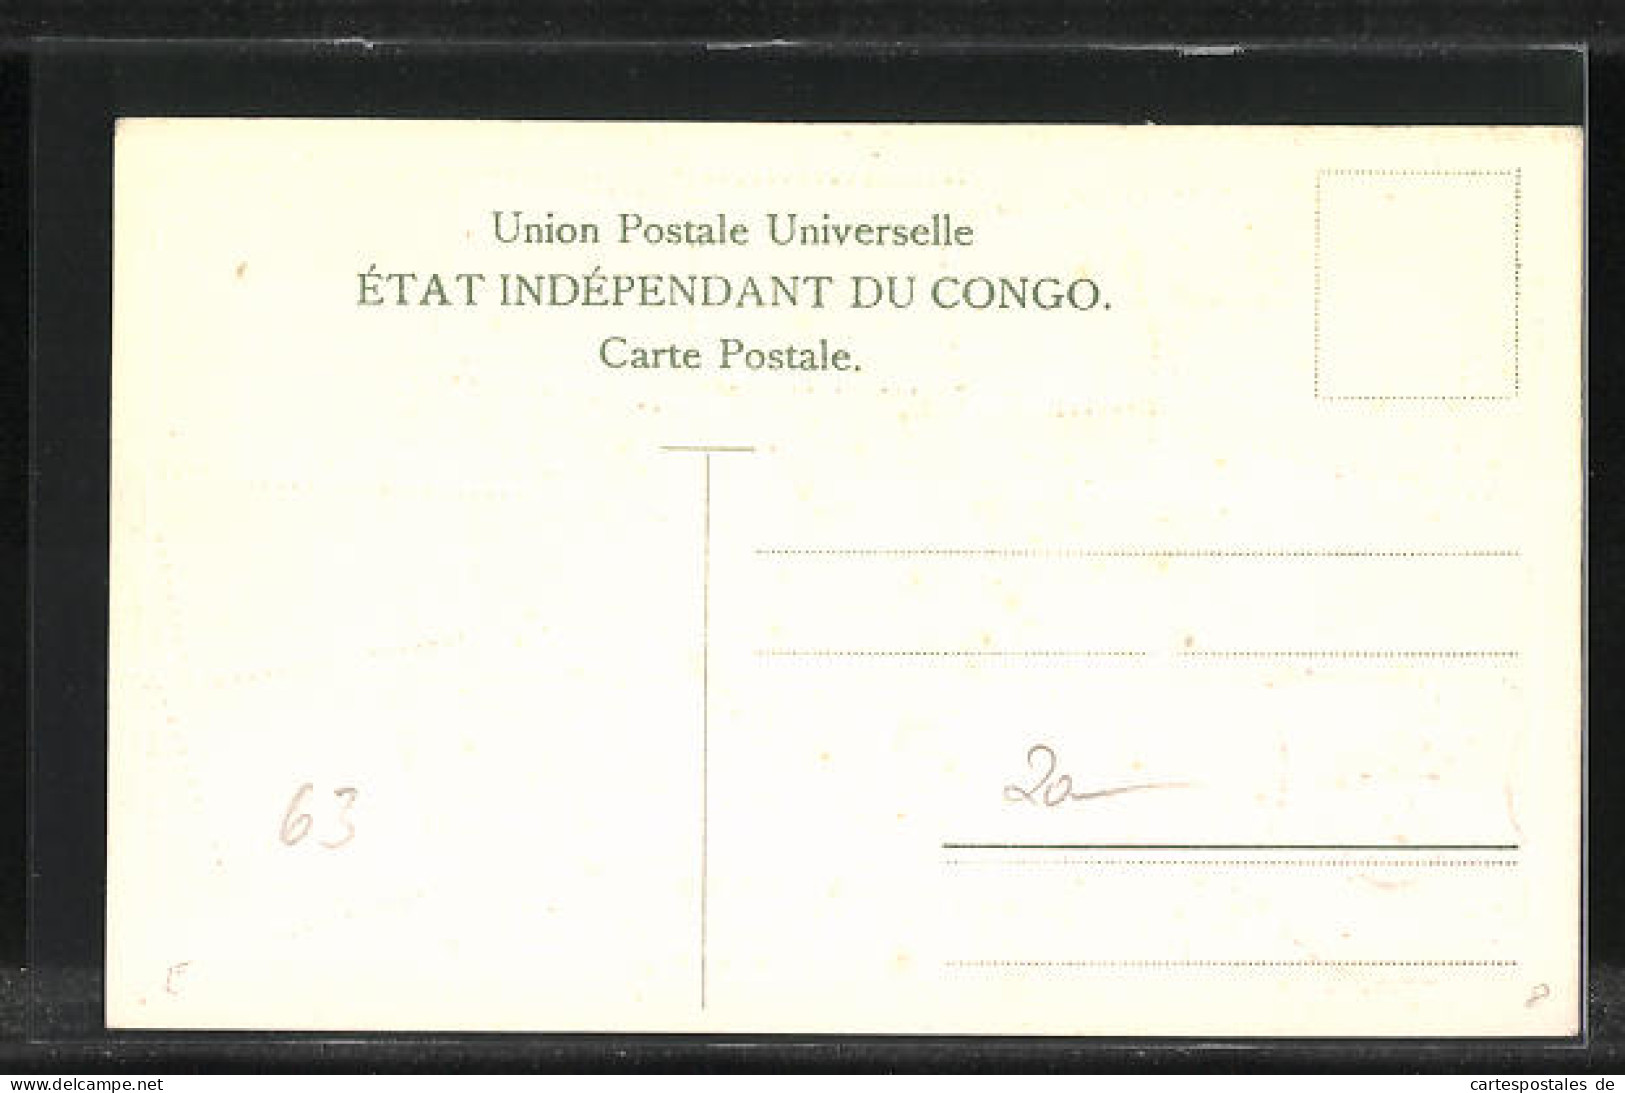 Präge-Künstler-AK Congo, Briefmarken Und Wappen  - Stamps (pictures)